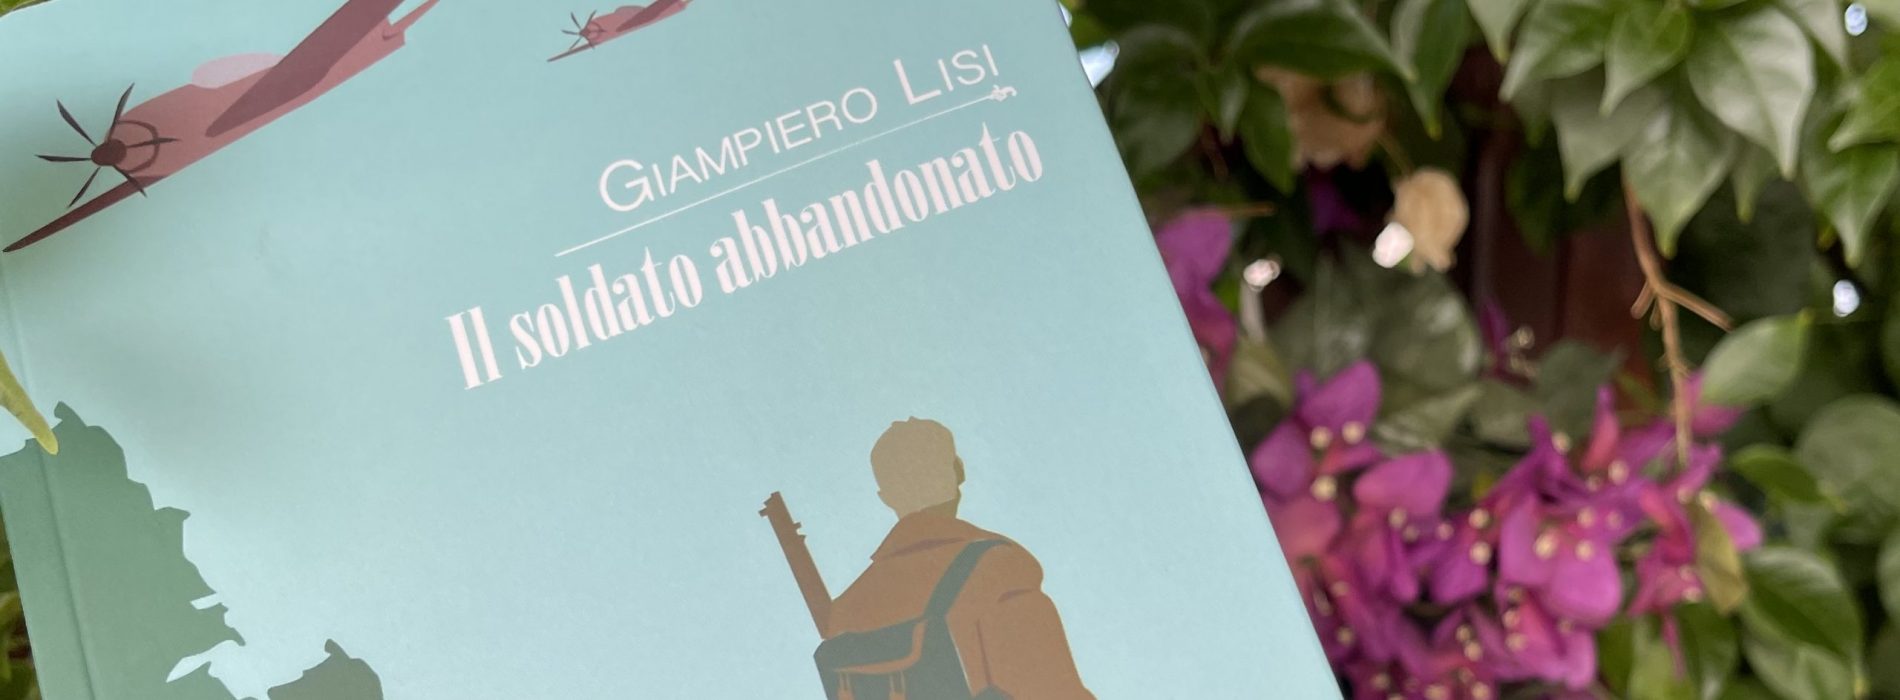 «Il soldato abbandonato», Giampiero Lisi è a Palazzo Paternò